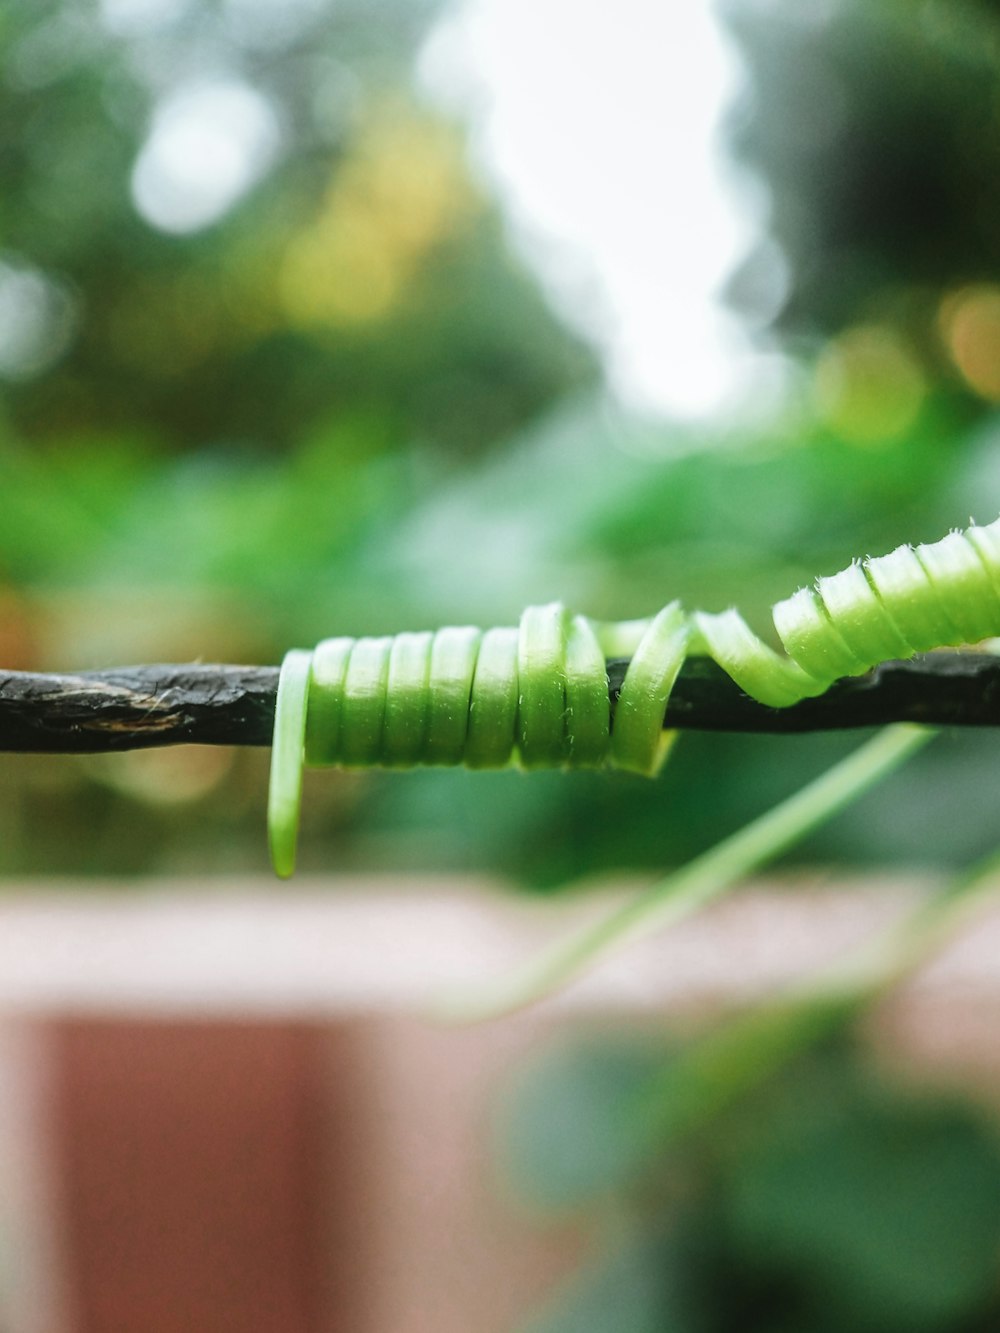 green caterpillar on brown stick